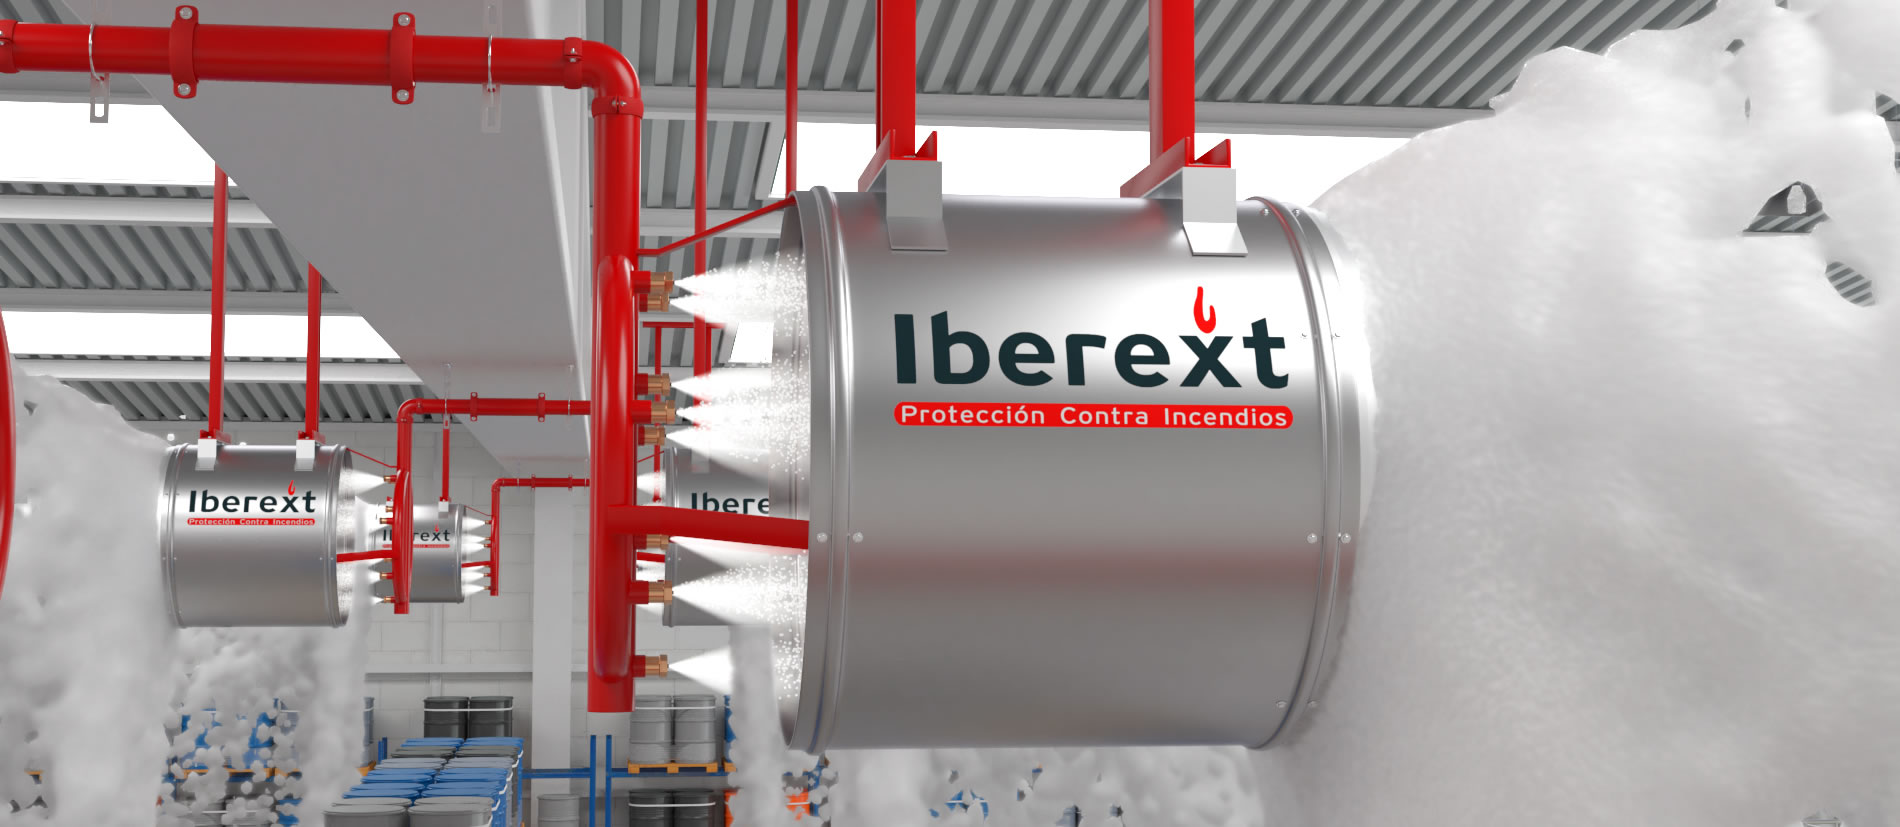 Generadores de espuma de alta expansión Iberext